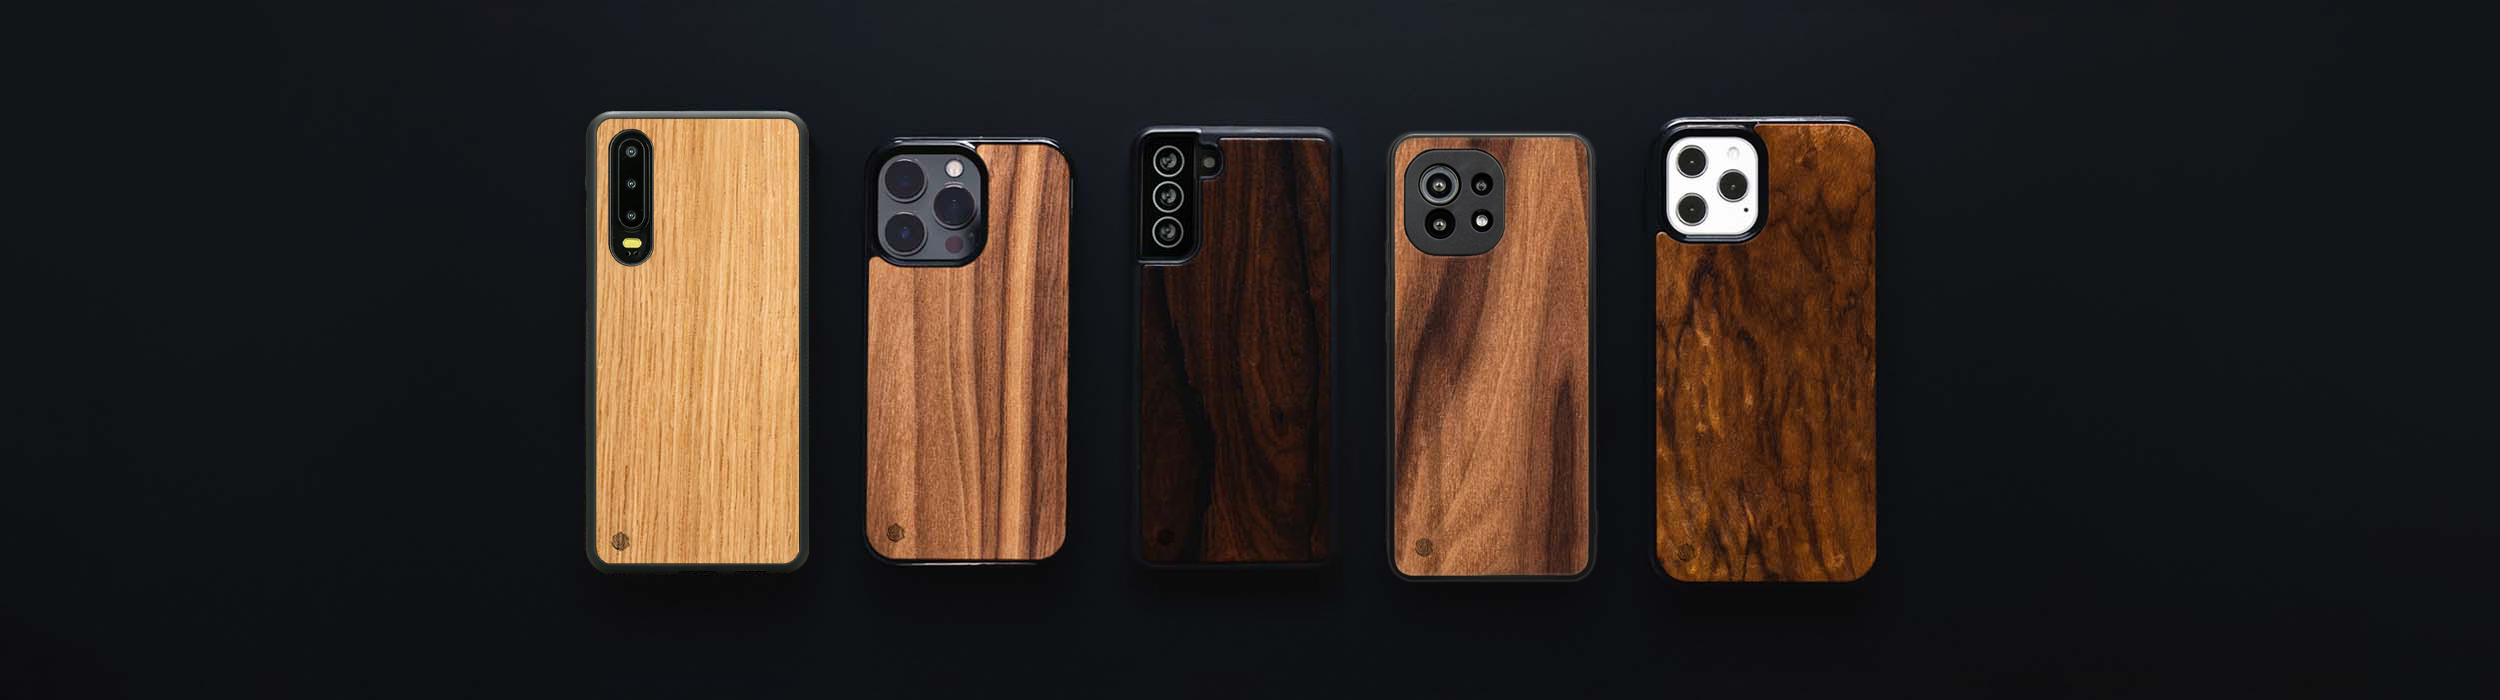 Huawei P30 lite Handyhüllen aus Holz